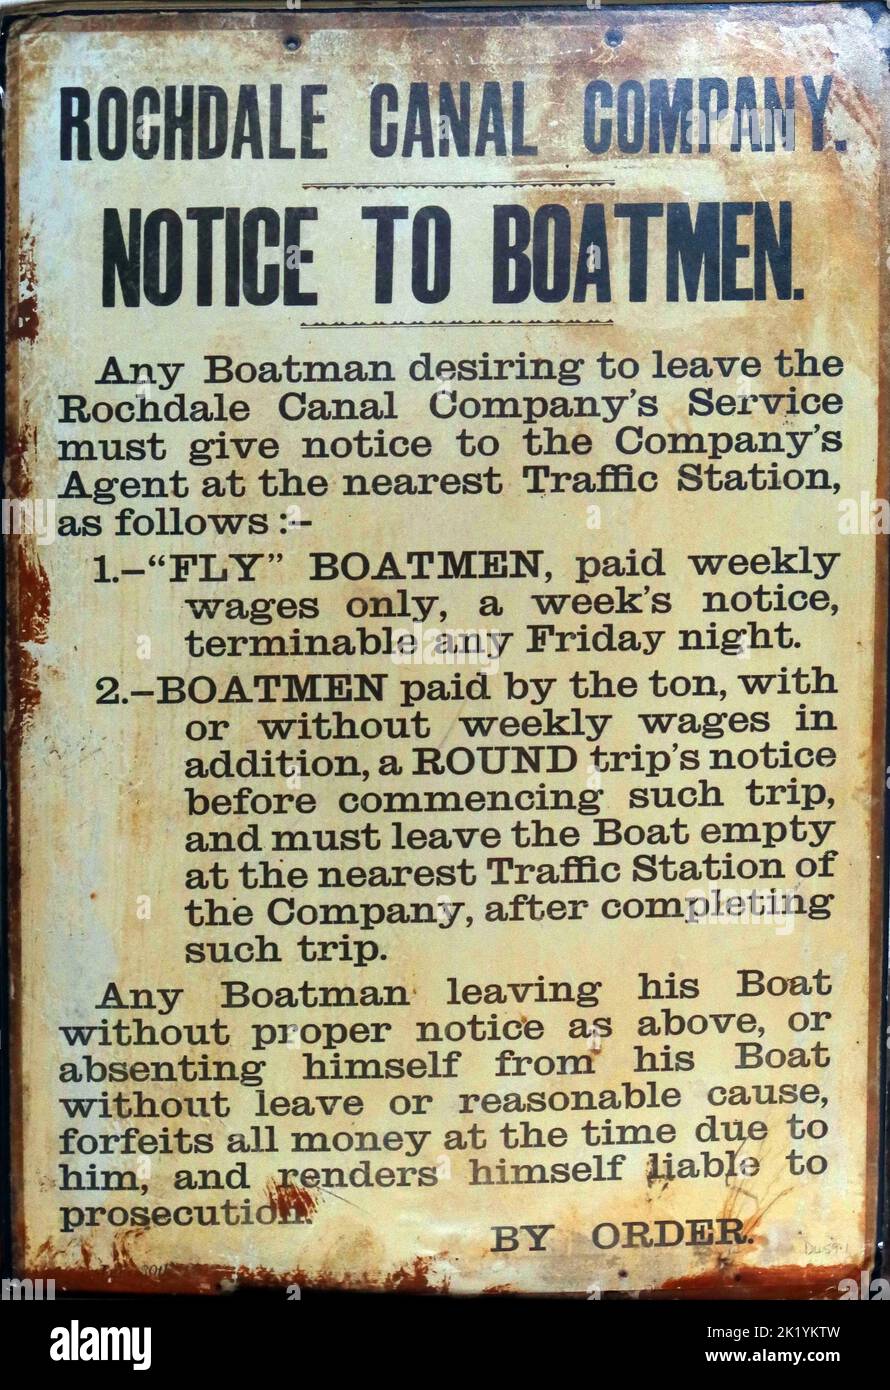 Schild aus Emaille, Rochdale Canal Company, Schild mit Hinweis an Boatas, arbeitsvorschriften, Regeln für die Anzeige auf Anordnung und strafrechtlich haftbar Stockfoto